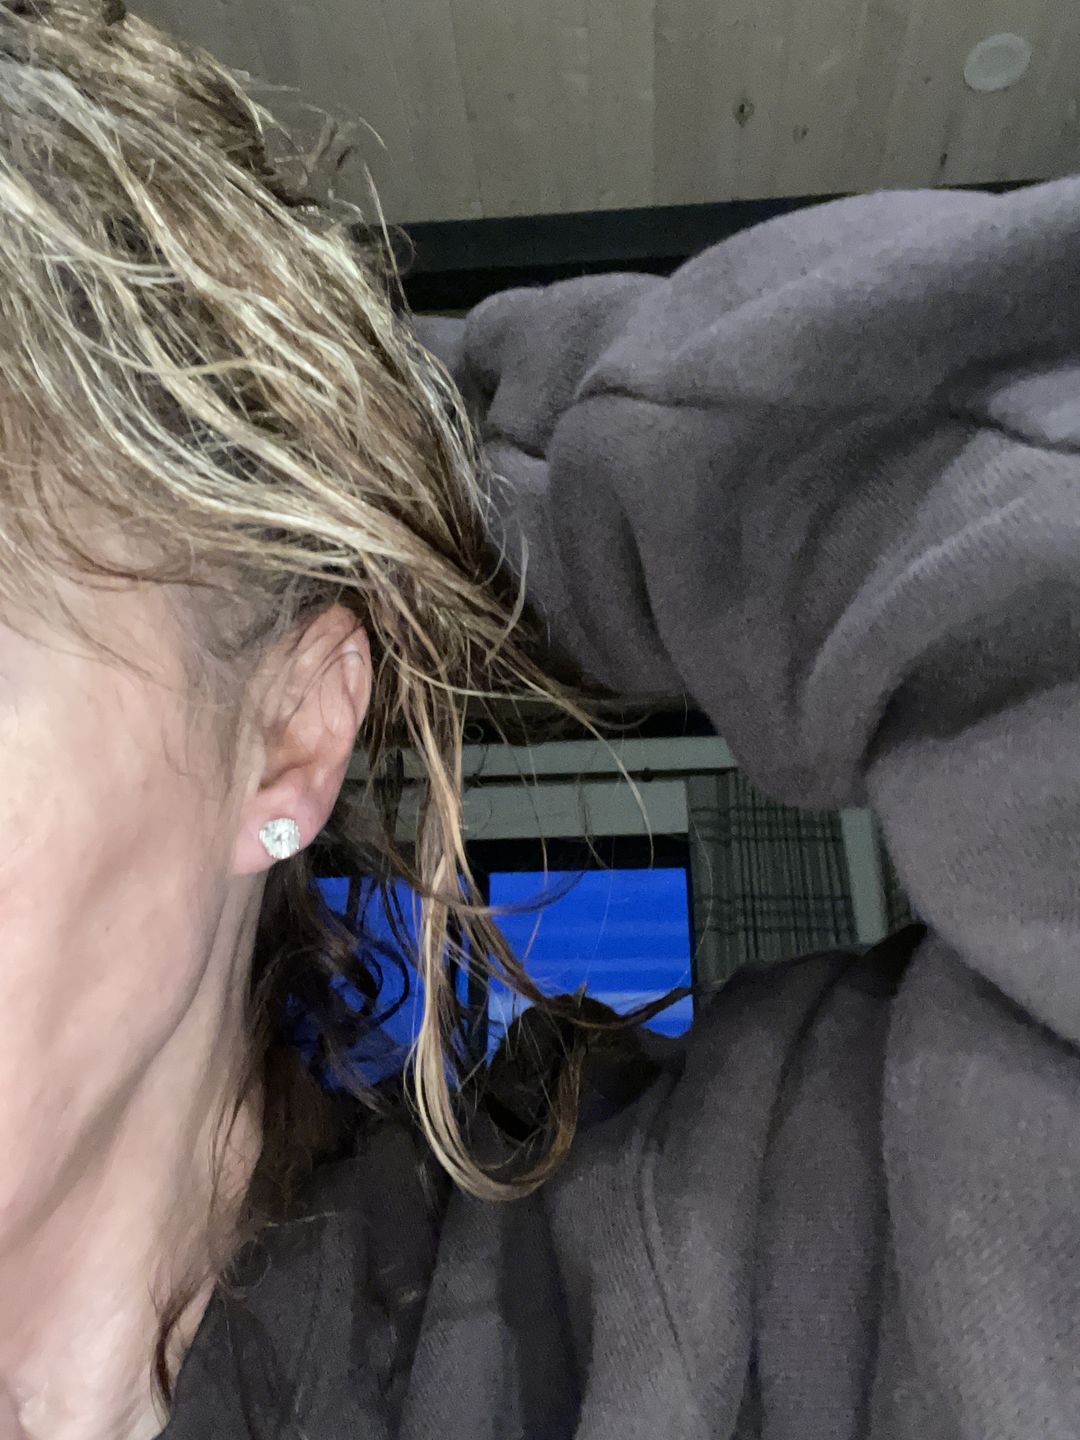  XIANNVXI Earring Backs For Droopy Ears